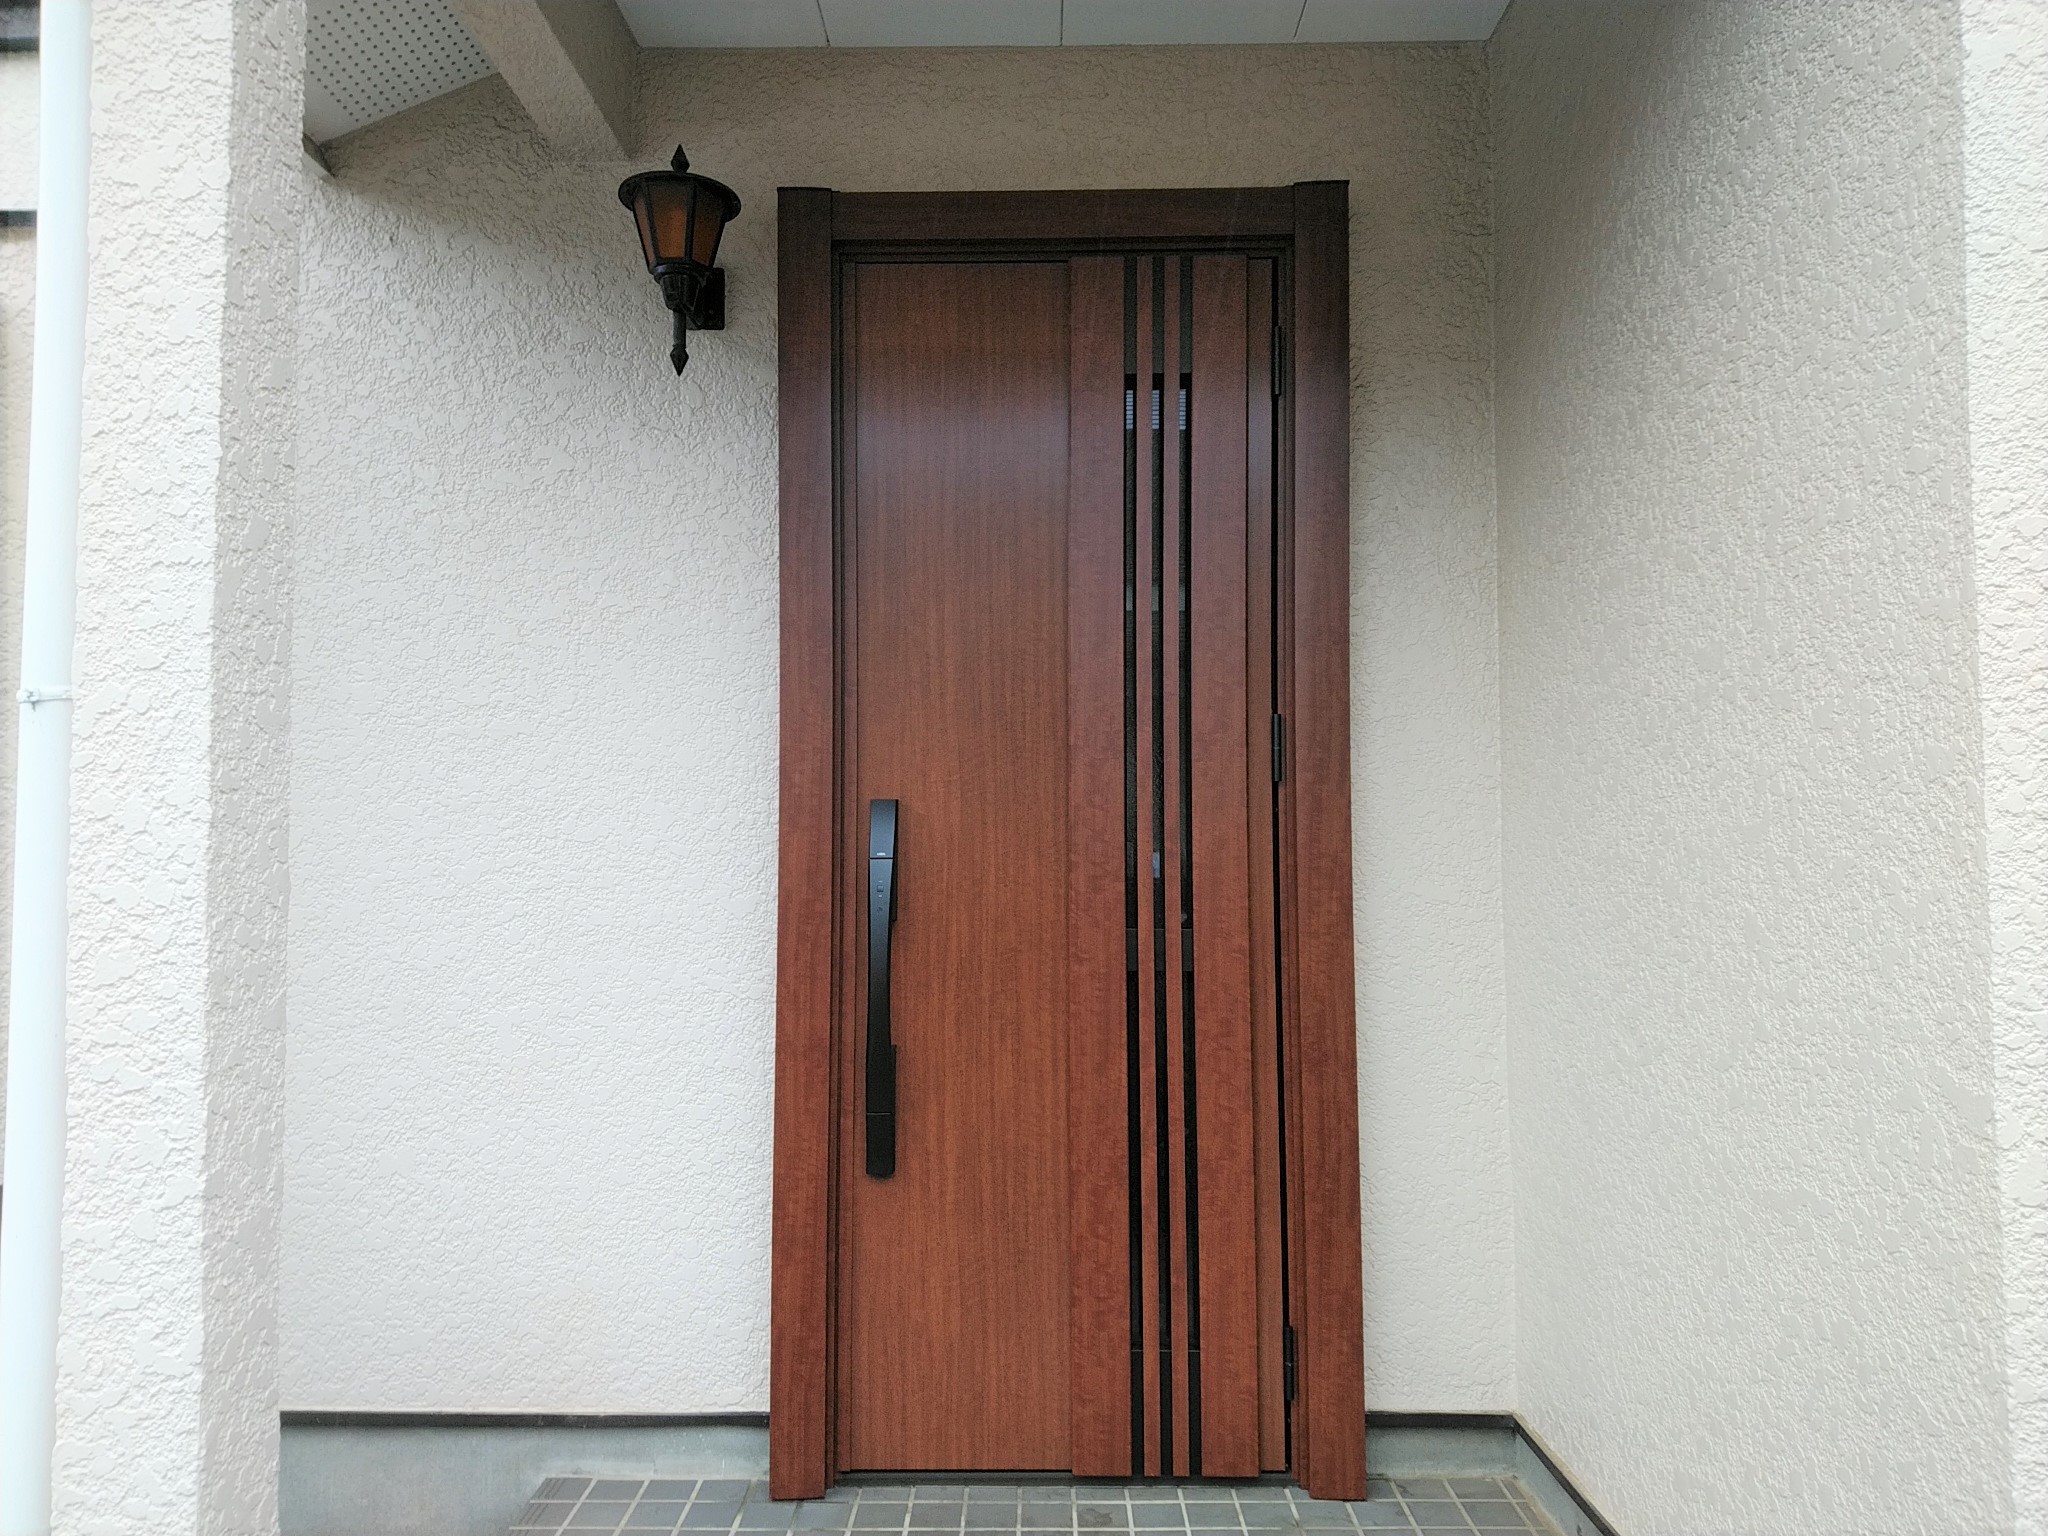 アイカの木製玄関ドアを採風断熱ドアにリフォーム【LIXILリシェントM83型】玄関ドアのリフォームなら玄関ドアマイスターへお任せください